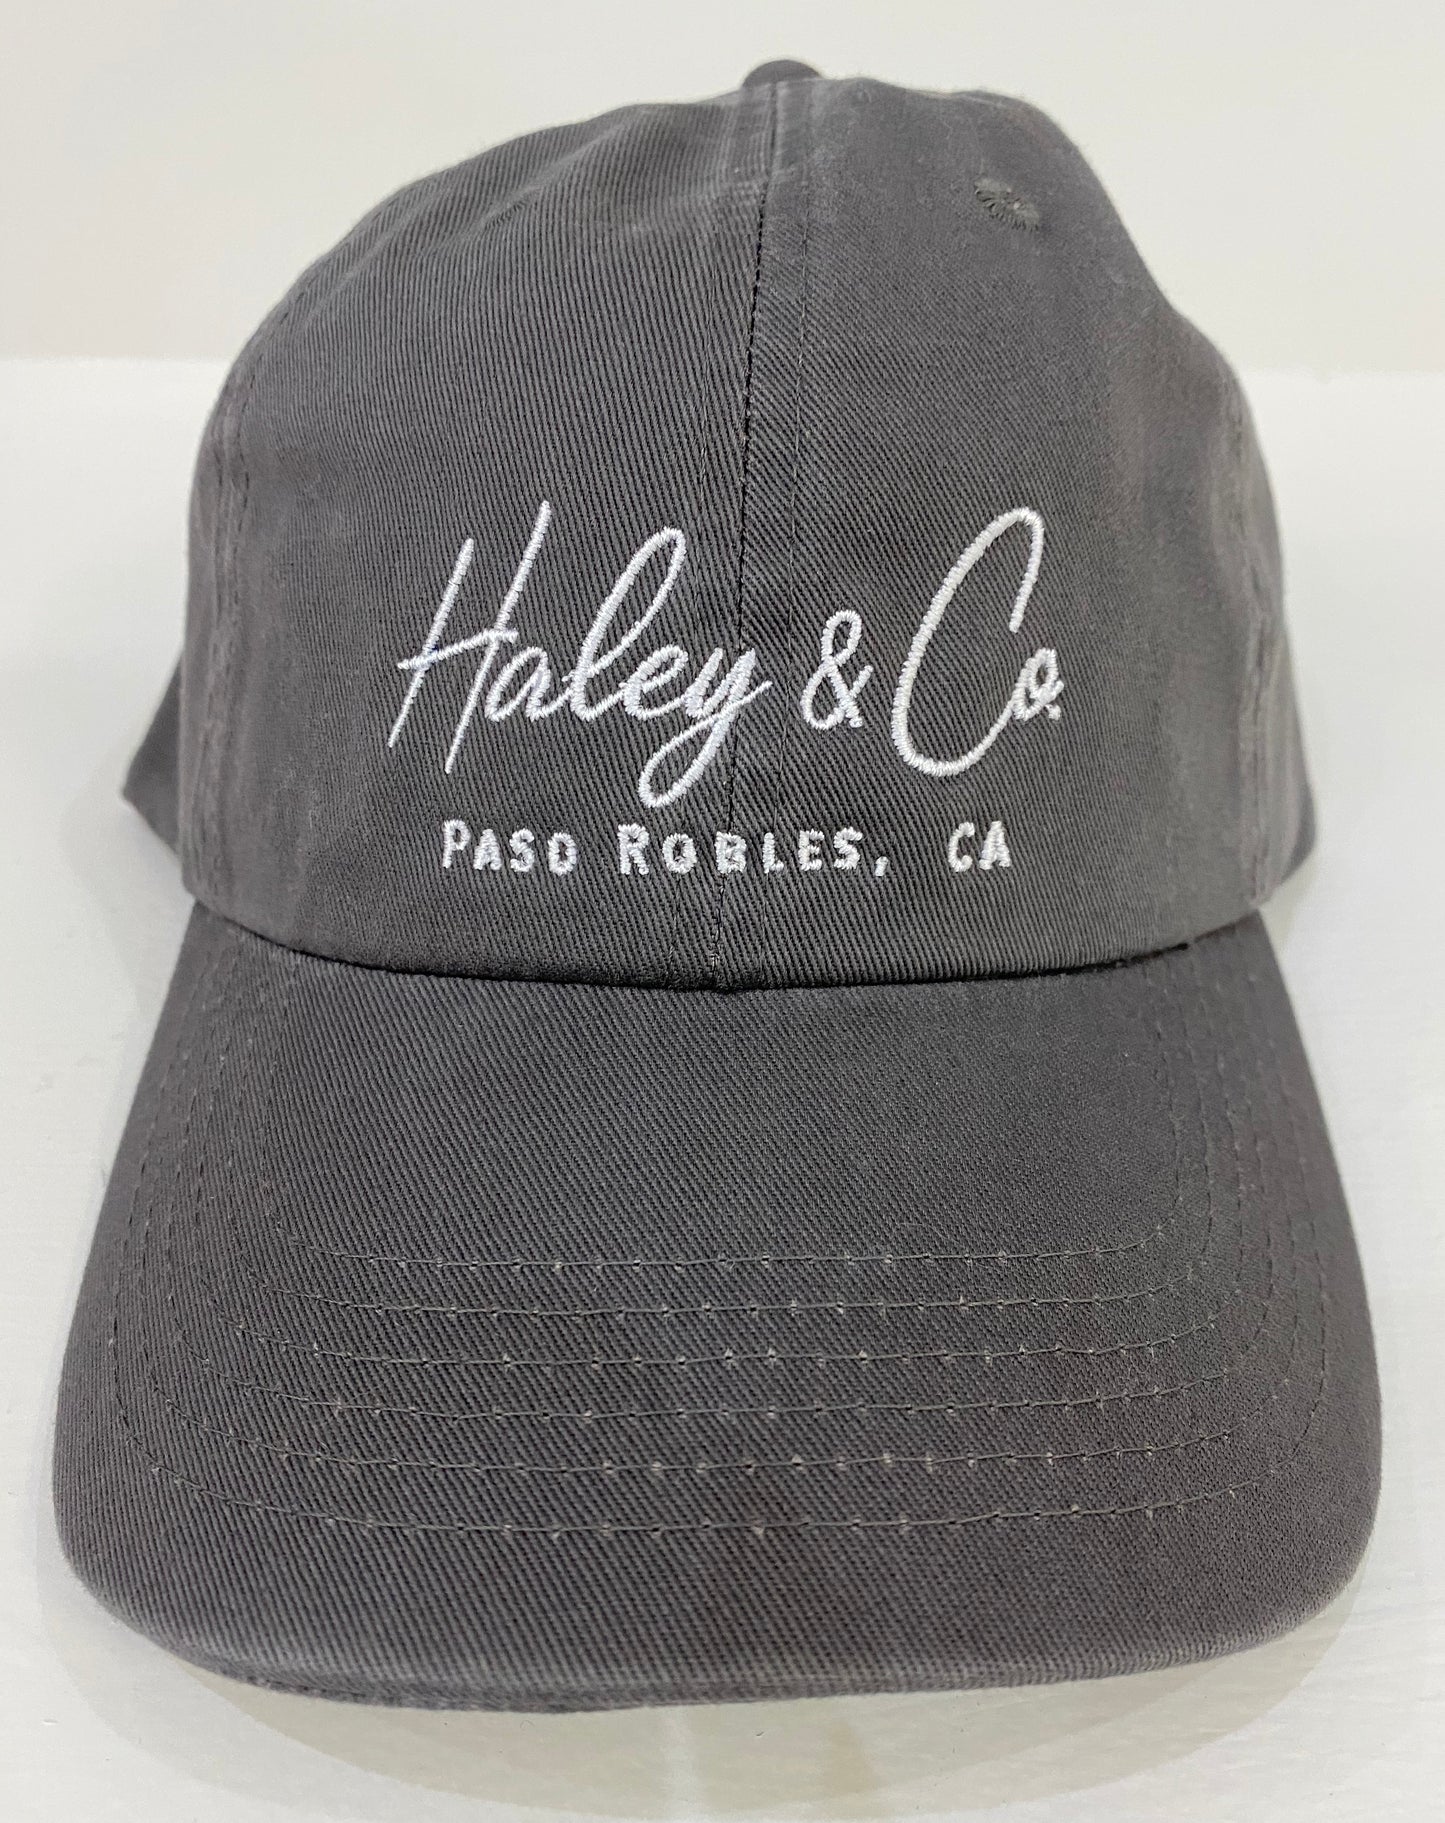 Haley & Co. Ballbase Caps